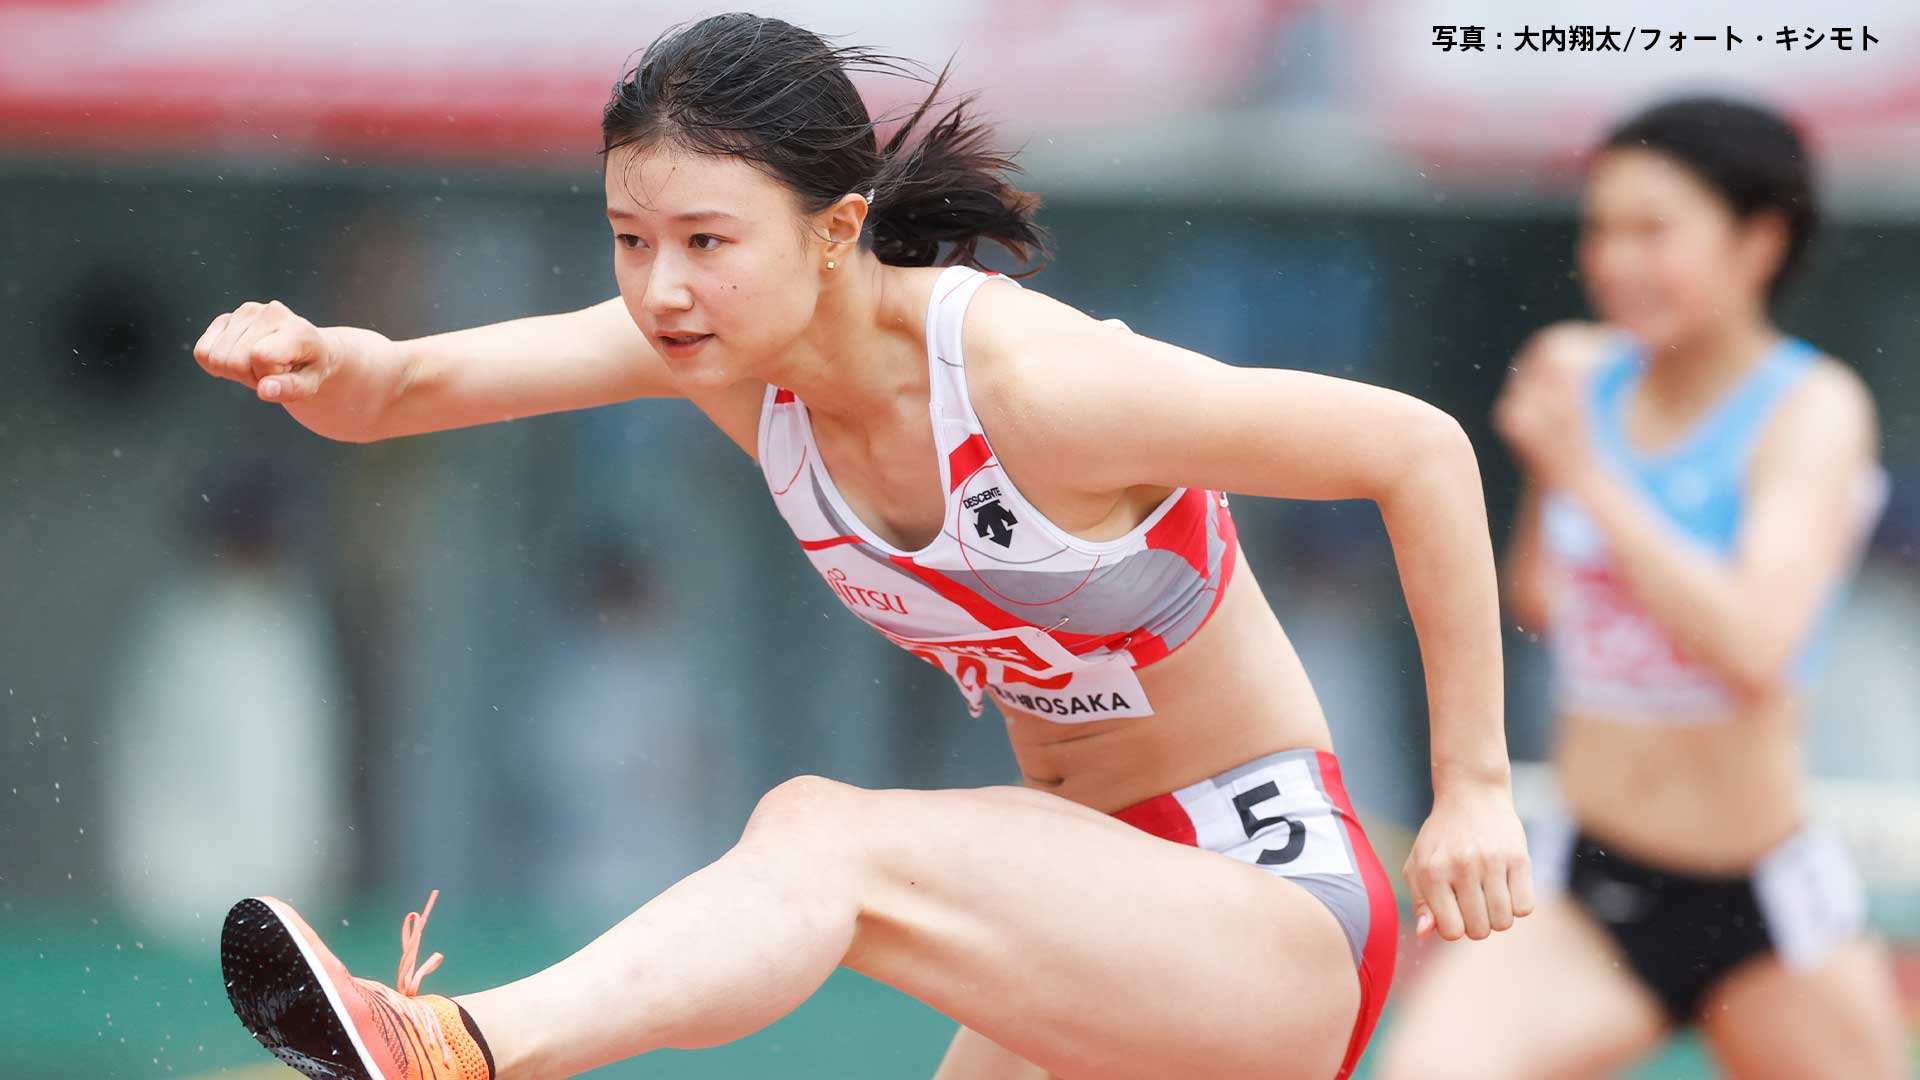 陸上 女子 世界リレー横浜】女子4×200mR決勝 日本選手レース後コメント ...